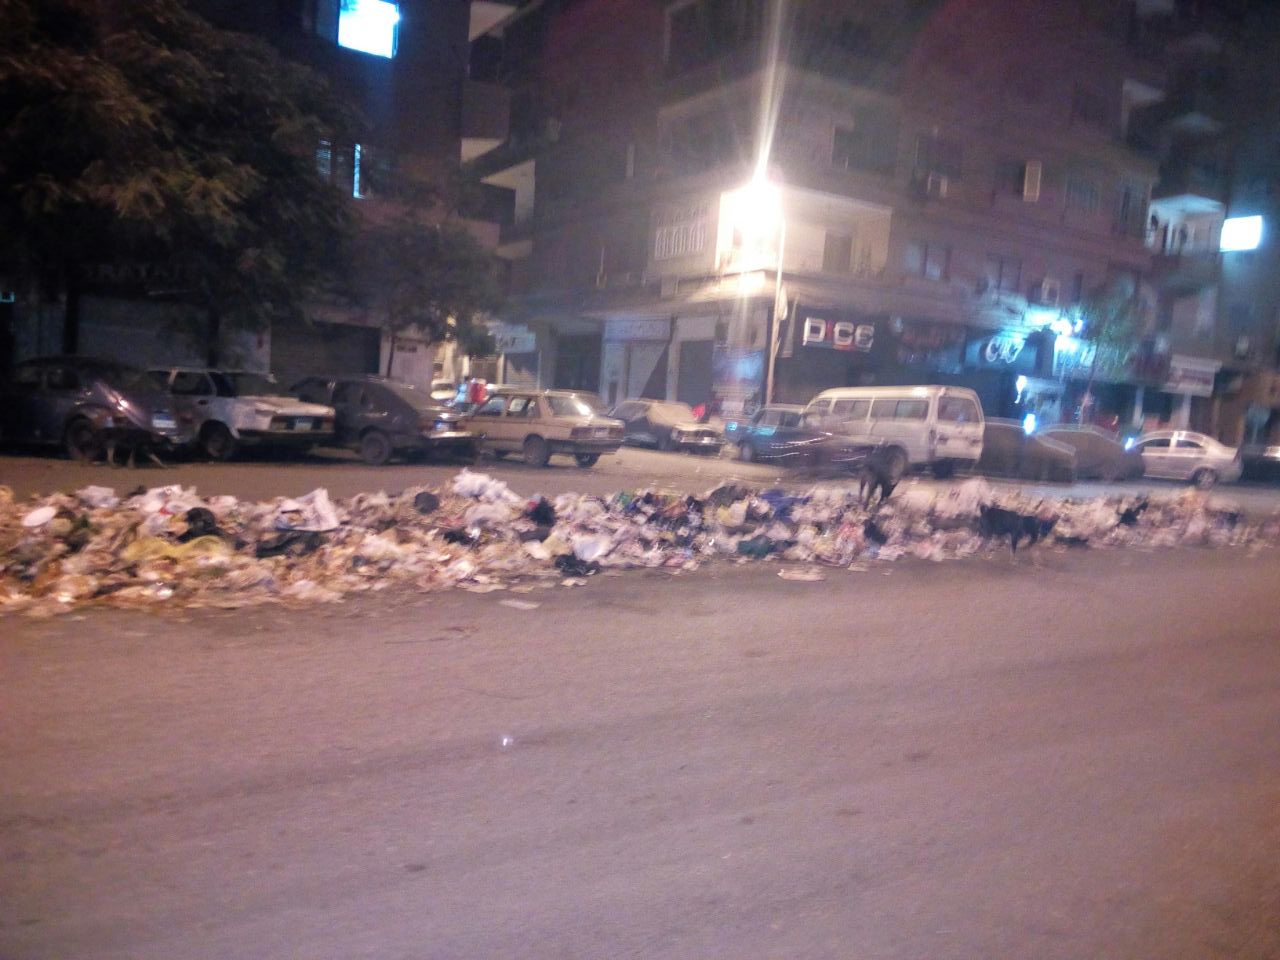 بالصور شكوى من تراكم القمامة فى شوارع حى عين شمس الشرقية اليوم